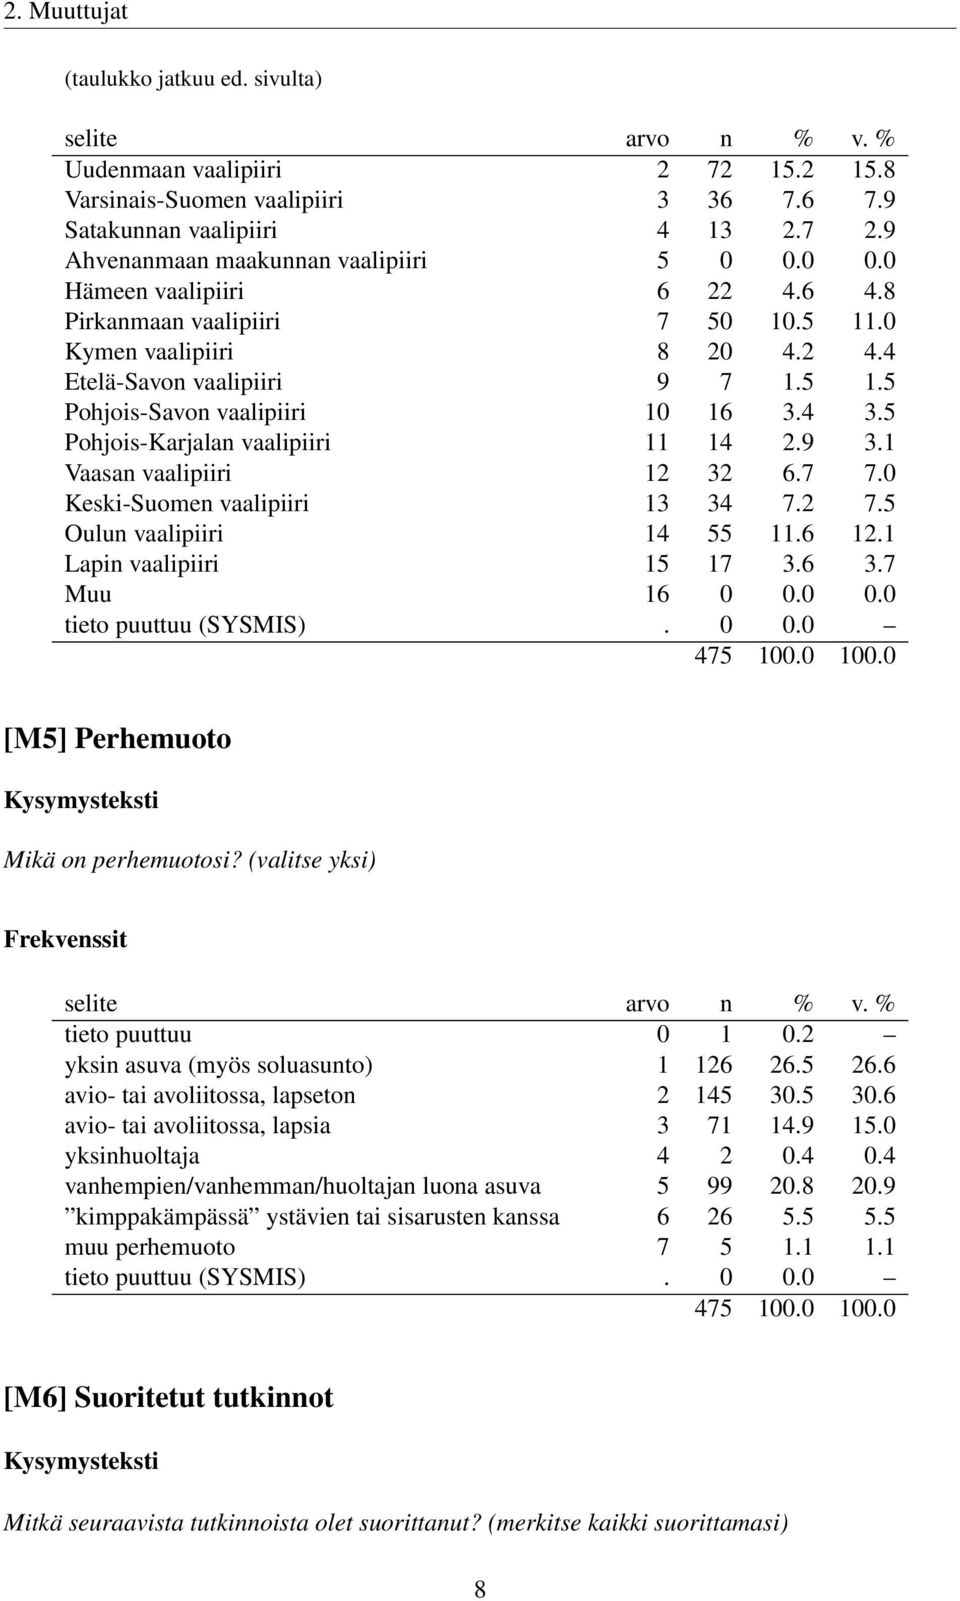 5 Pohjois-Karjalan vaalipiiri 11 14 2.9 3.1 Vaasan vaalipiiri 12 32 6.7 7.0 Keski-Suomen vaalipiiri 13 34 7.2 7.5 Oulun vaalipiiri 14 55 11.6 12.1 Lapin vaalipiiri 15 17 3.6 3.7 Muu 16 0 0.